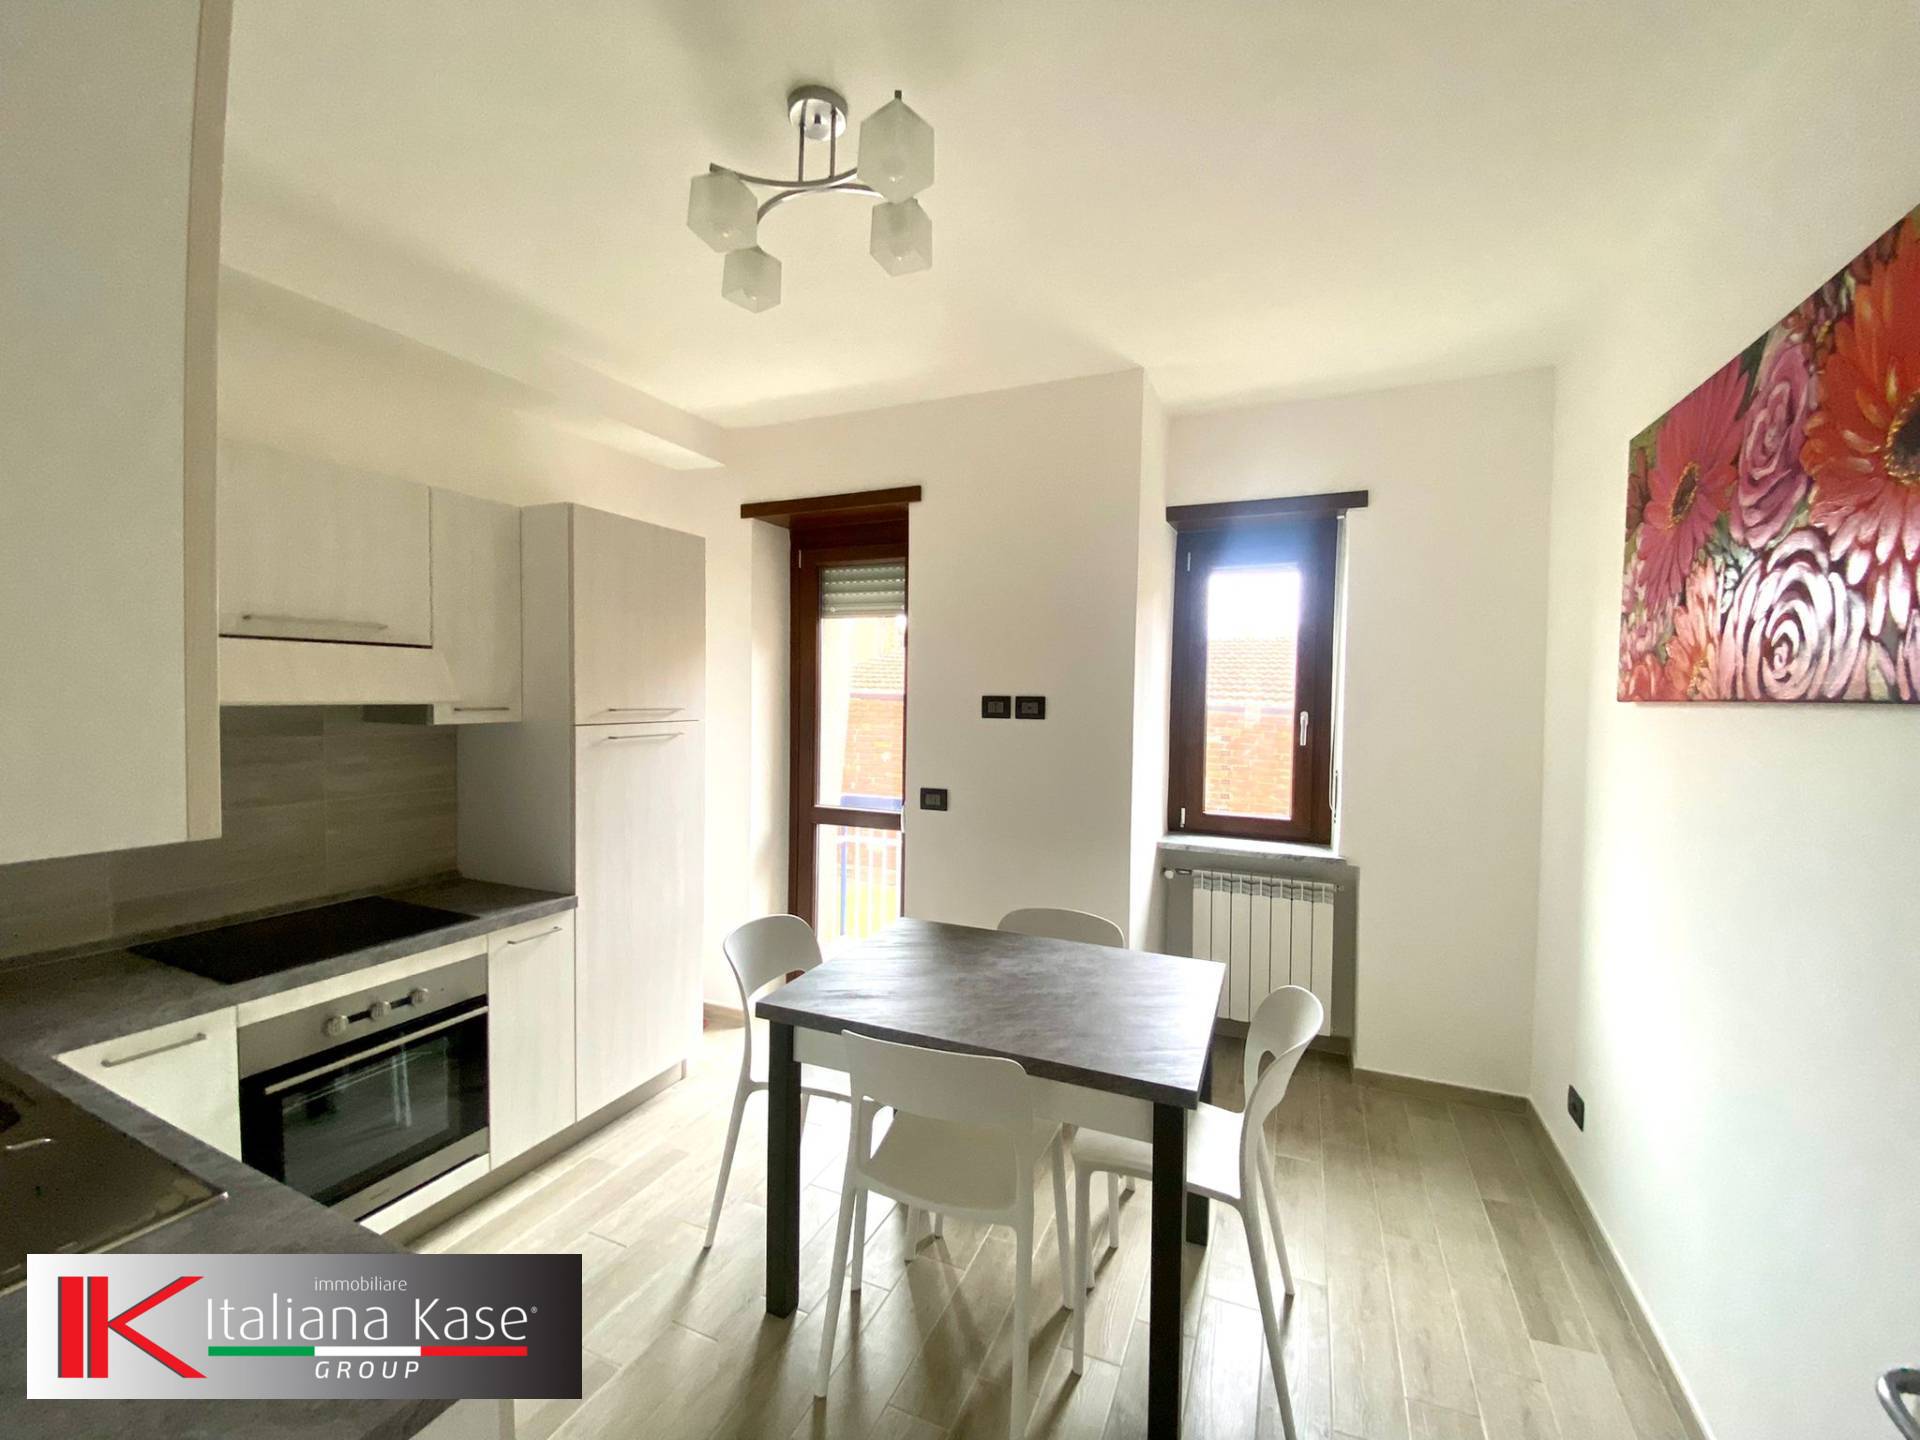 Appartamento in vendita a Caluso, 2 locali, zona Località: Caluso, prezzo € 48.000 | PortaleAgenzieImmobiliari.it